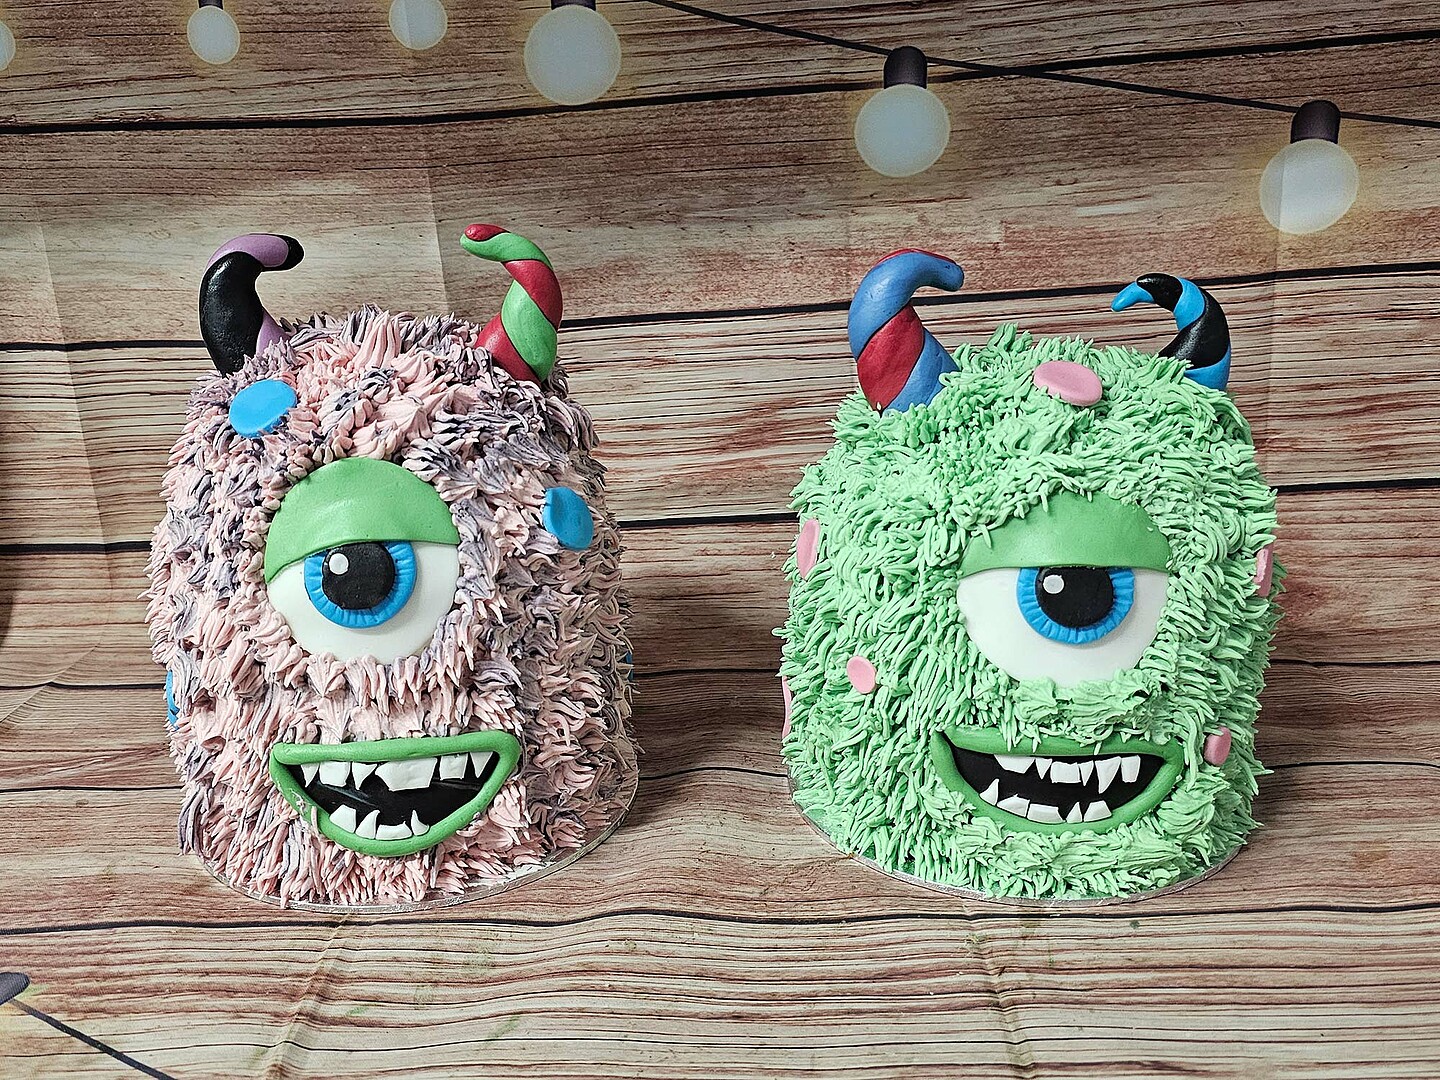 Zwei Torten in Monsteroptik. Links ein rosa Monster mit einem Auge und Hörnern, rechts ein grünes Monster mit einem Auge und Hörnern.